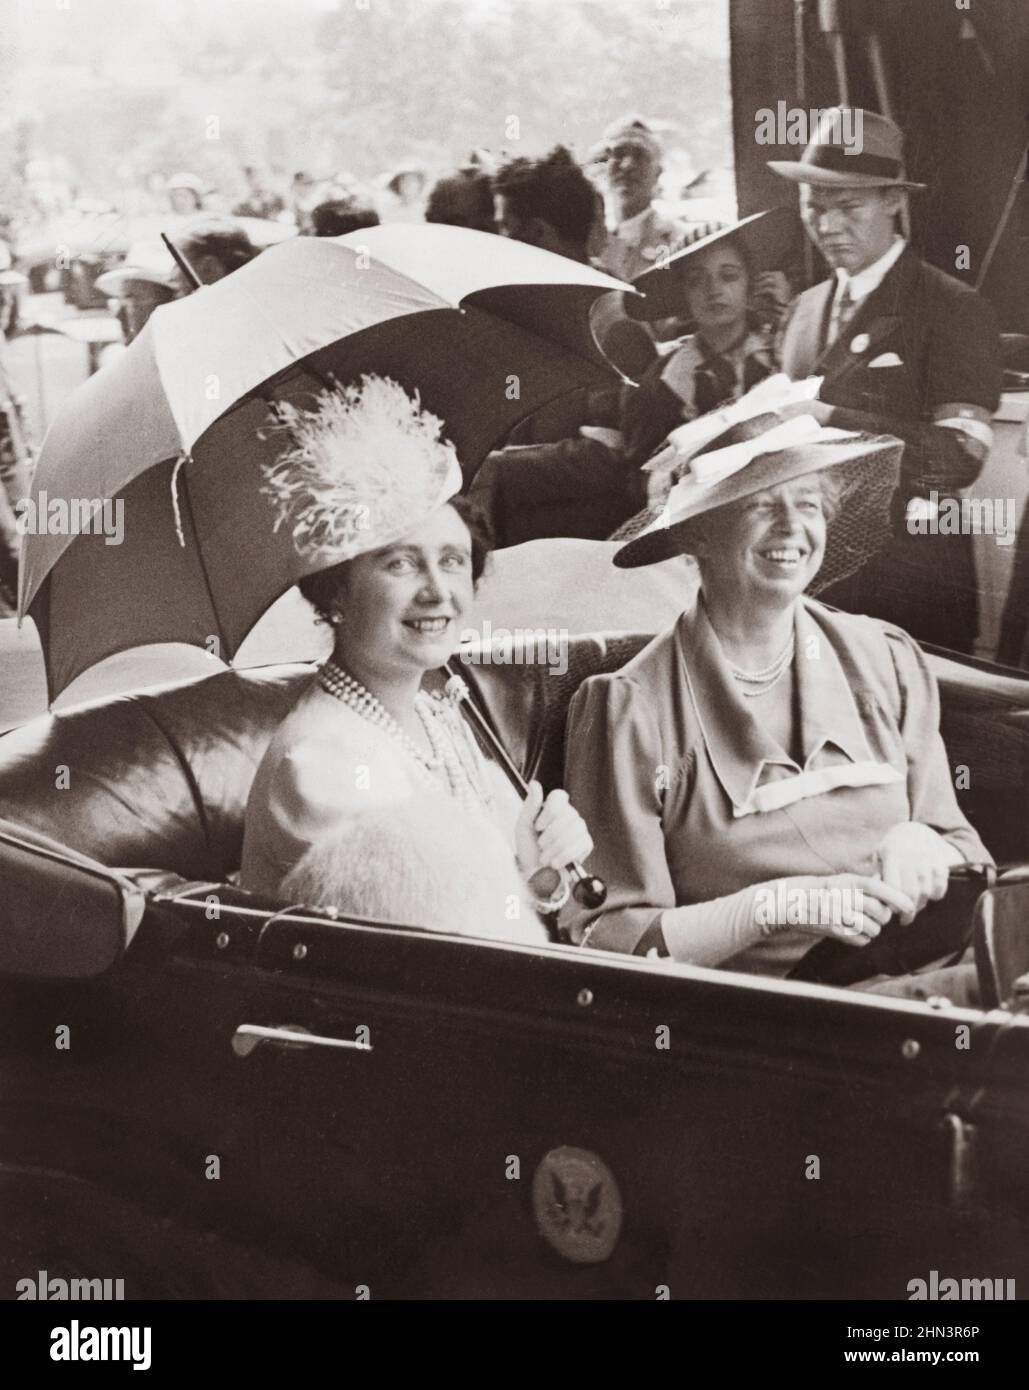 Photo d'époque de Mme Eleanor Roosevelt et de la reine Elizabeth, tenant un parapluie, en voiture, laissant la gare pour la Maison Blanche. ÉTATS-UNIS. 1930s Banque D'Images